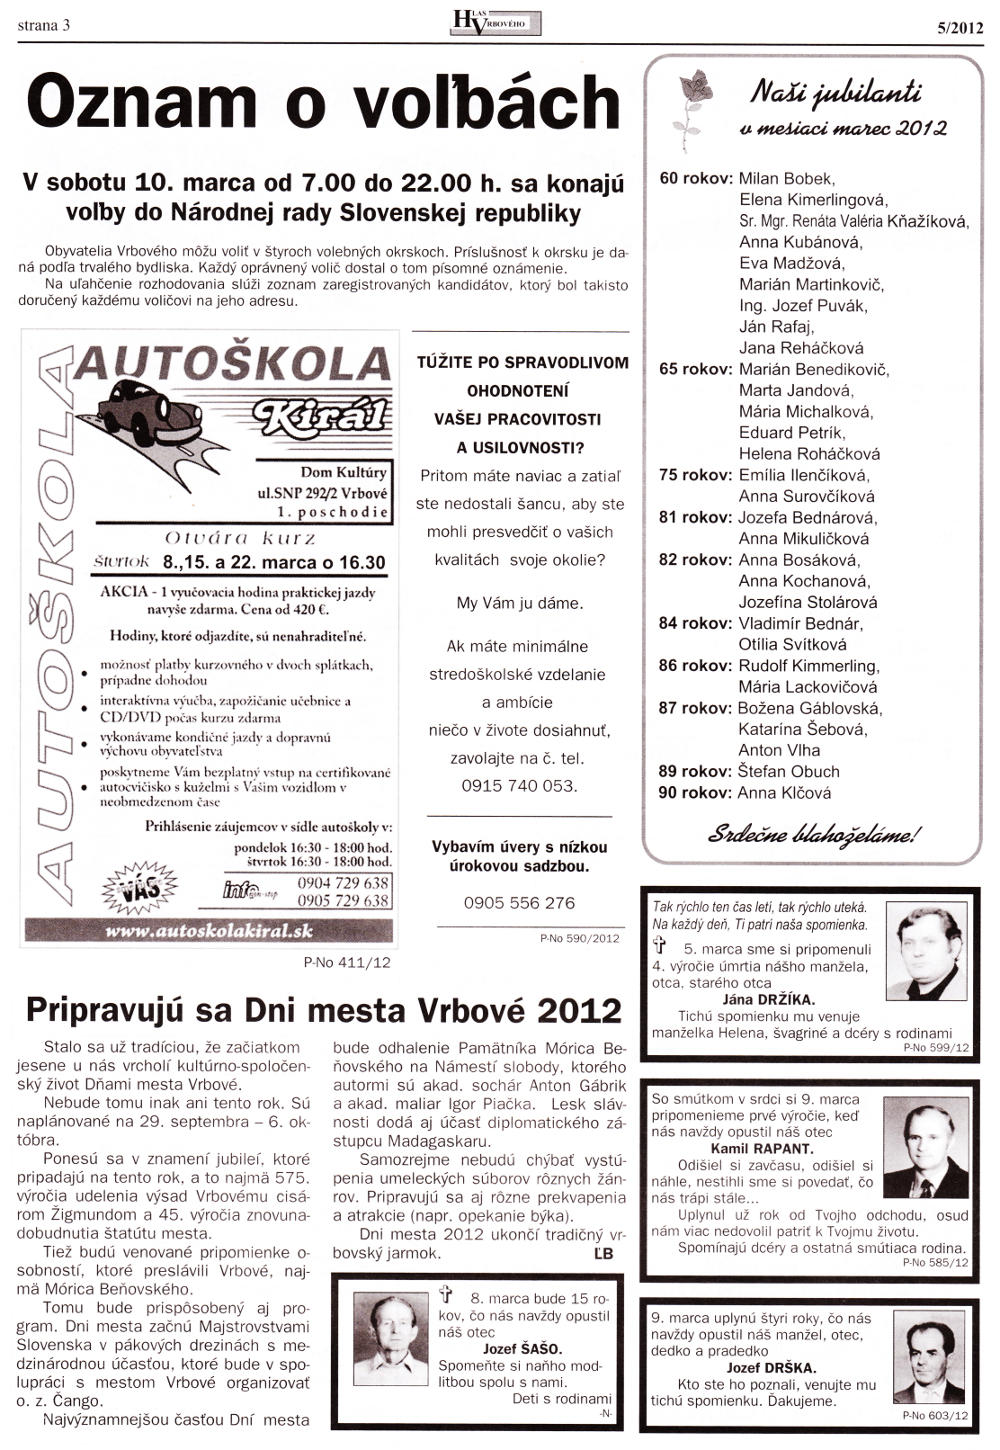 Hlas Vrbového 05/2012, strana 3